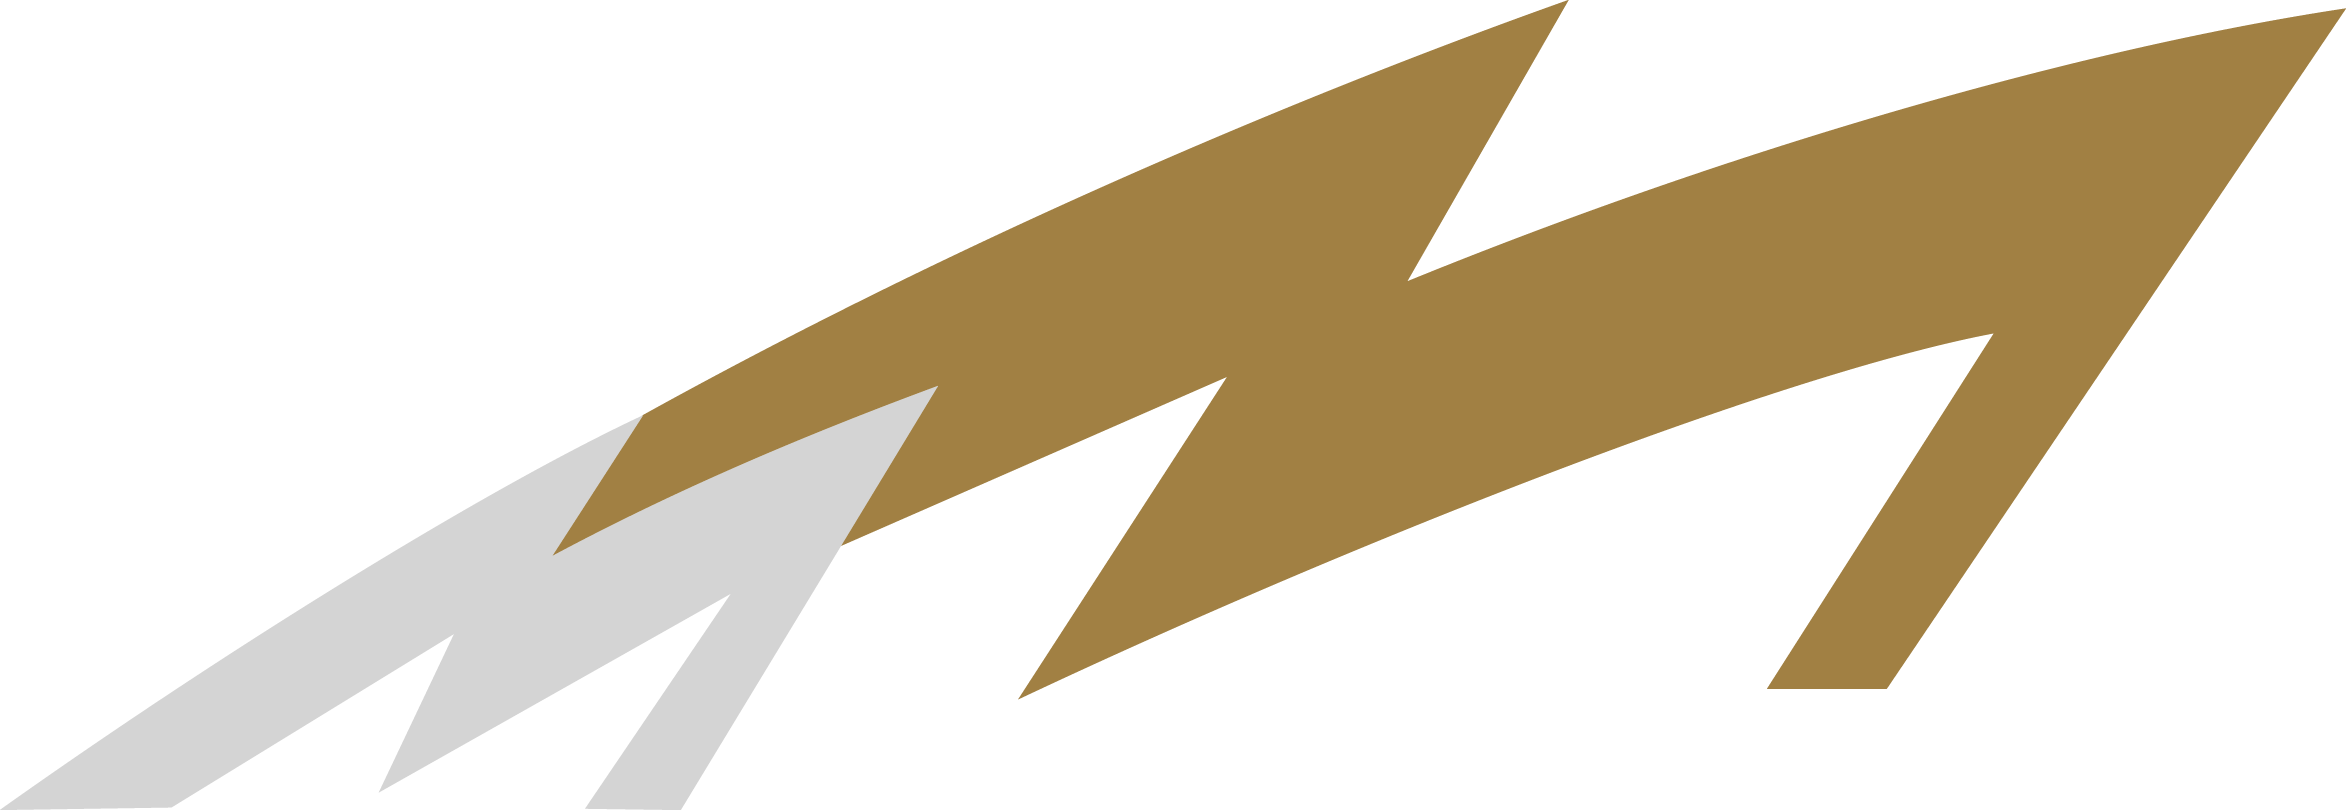 Munsterhuis Renault